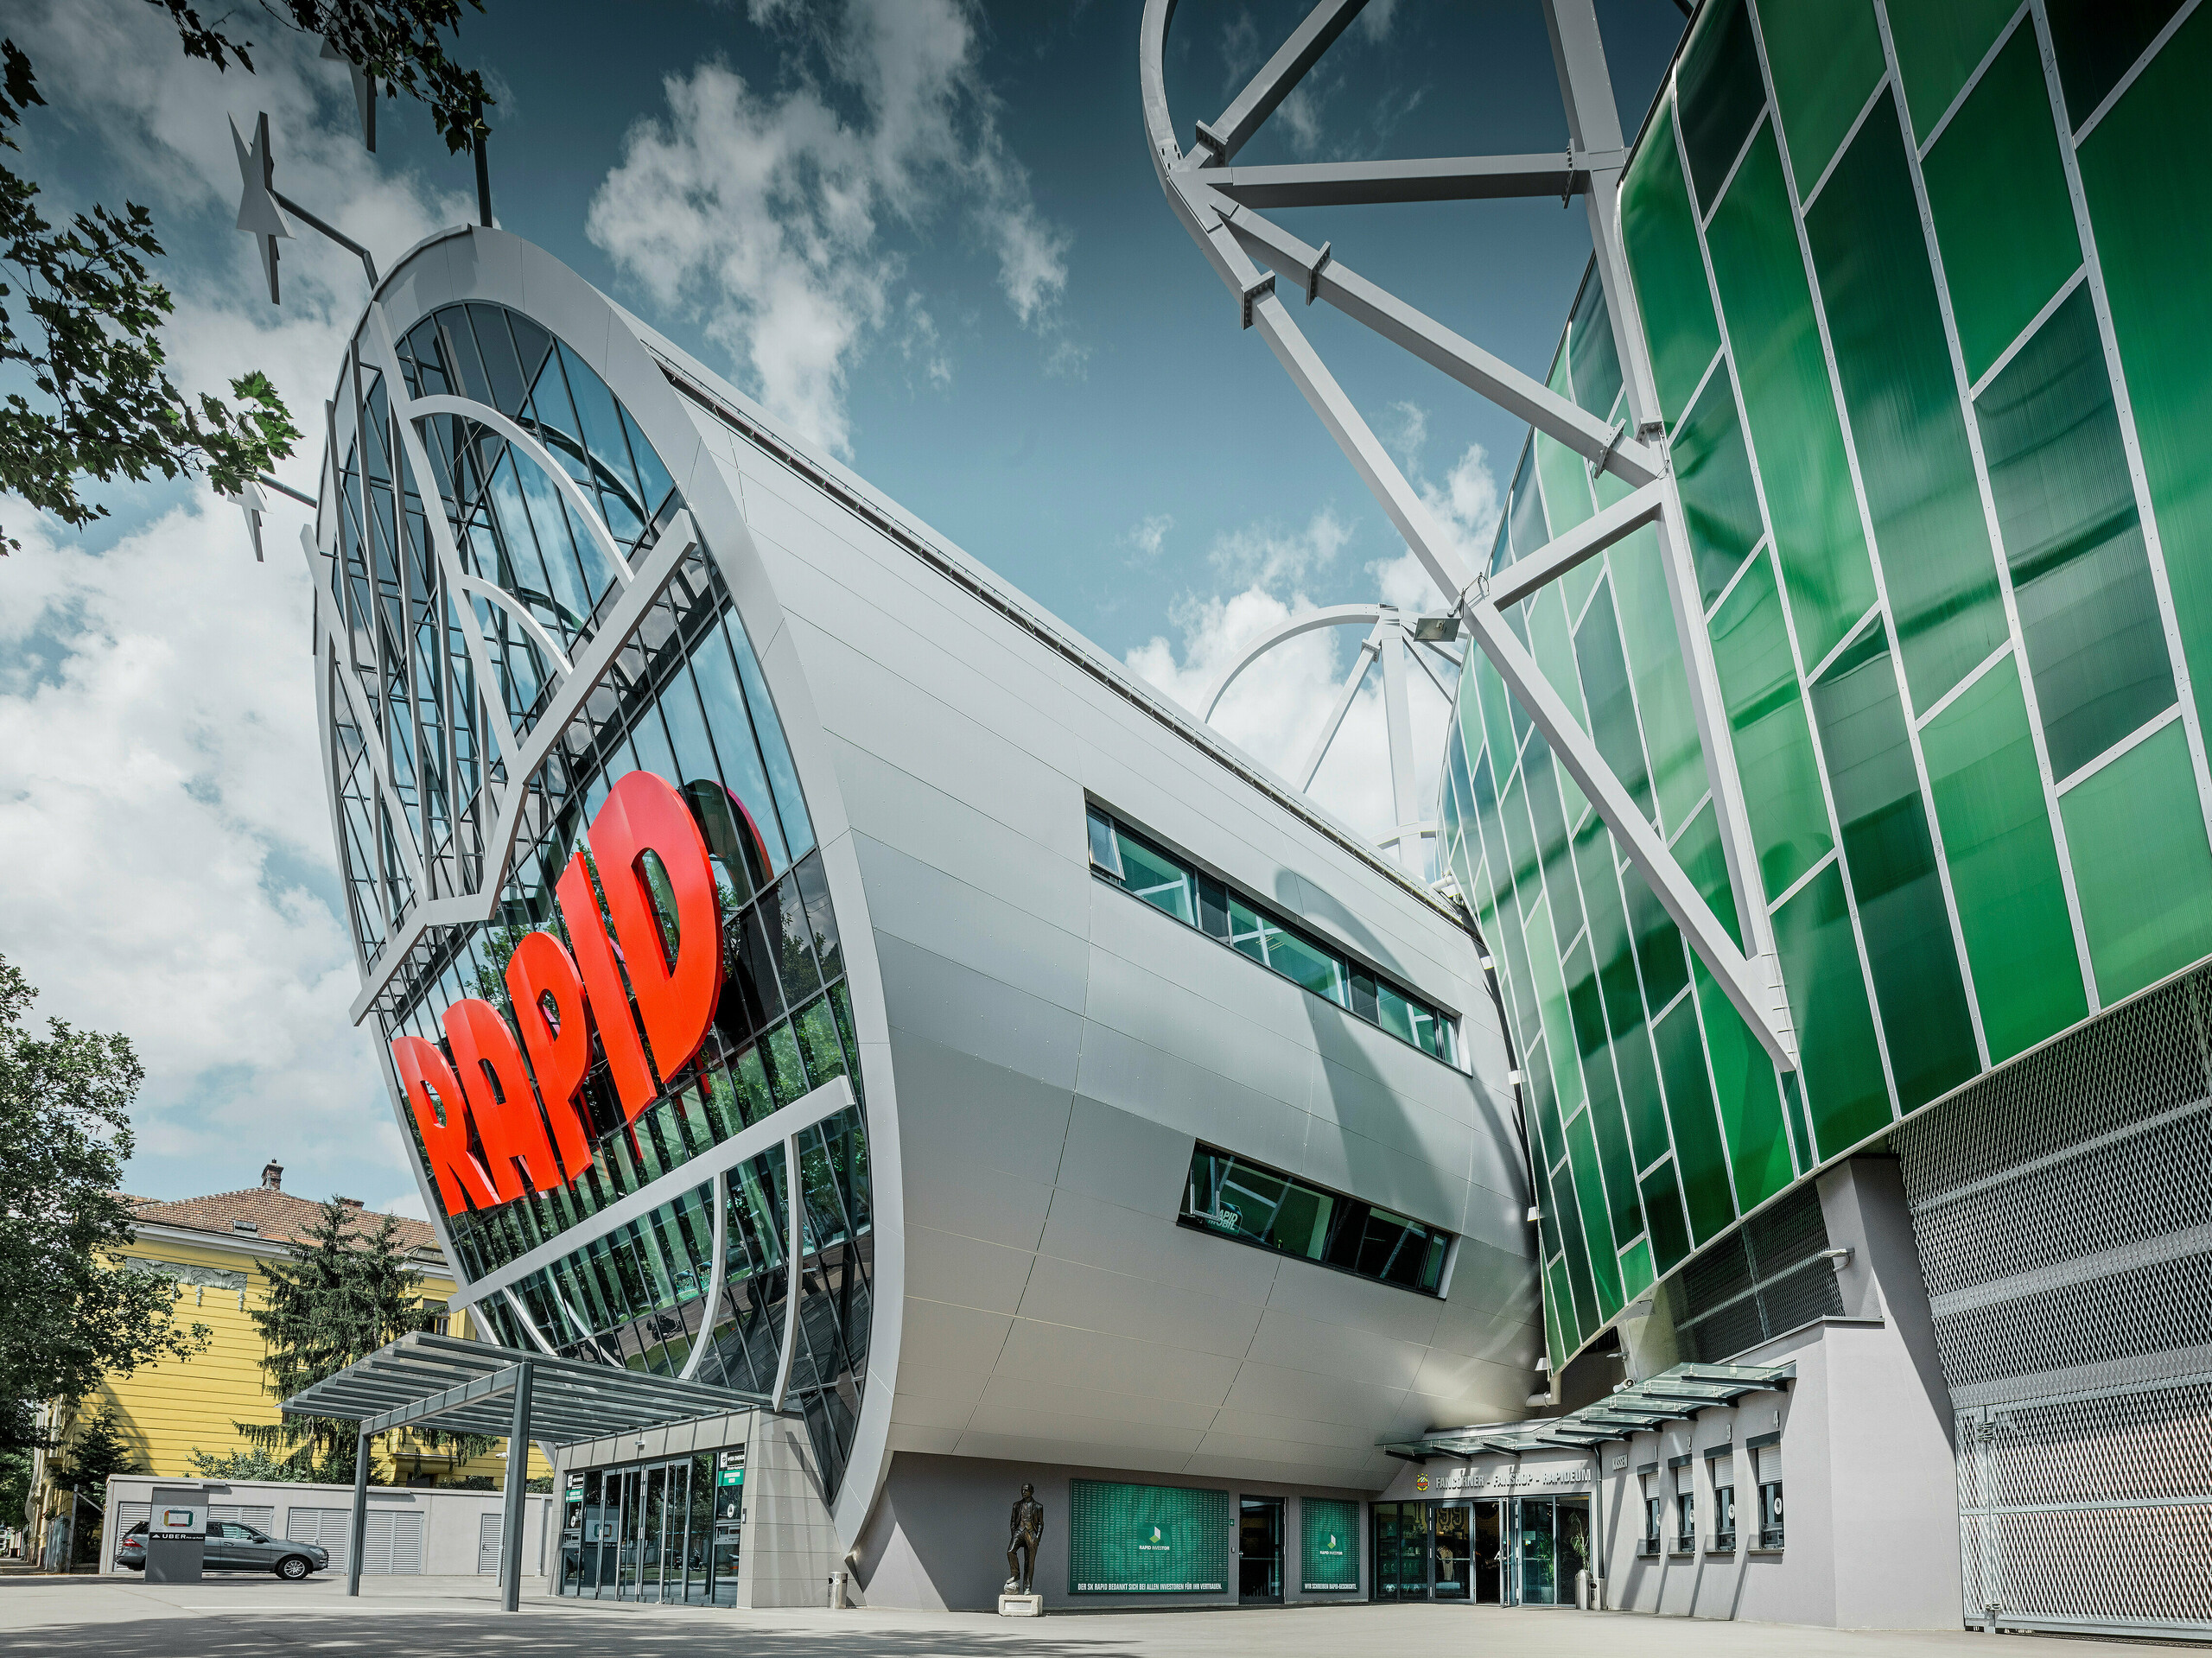 Das Allianz Stadion des SK Rapid Wien, gekennzeichnet durch eine imposante Röhre im Eingangsbereich. Die Röhre misst einen Durchmesser von 20 Meter. Die spektakuläre Fassade der Röhre ist mit PREFA Aluminium Verbundplatten in Silbermetallic verkleidet. Die Aluminiumhülle verleiht der Struktur ein futuristisches Design, das Technologie und Sportgeist in harmonischer Architektur vereint.